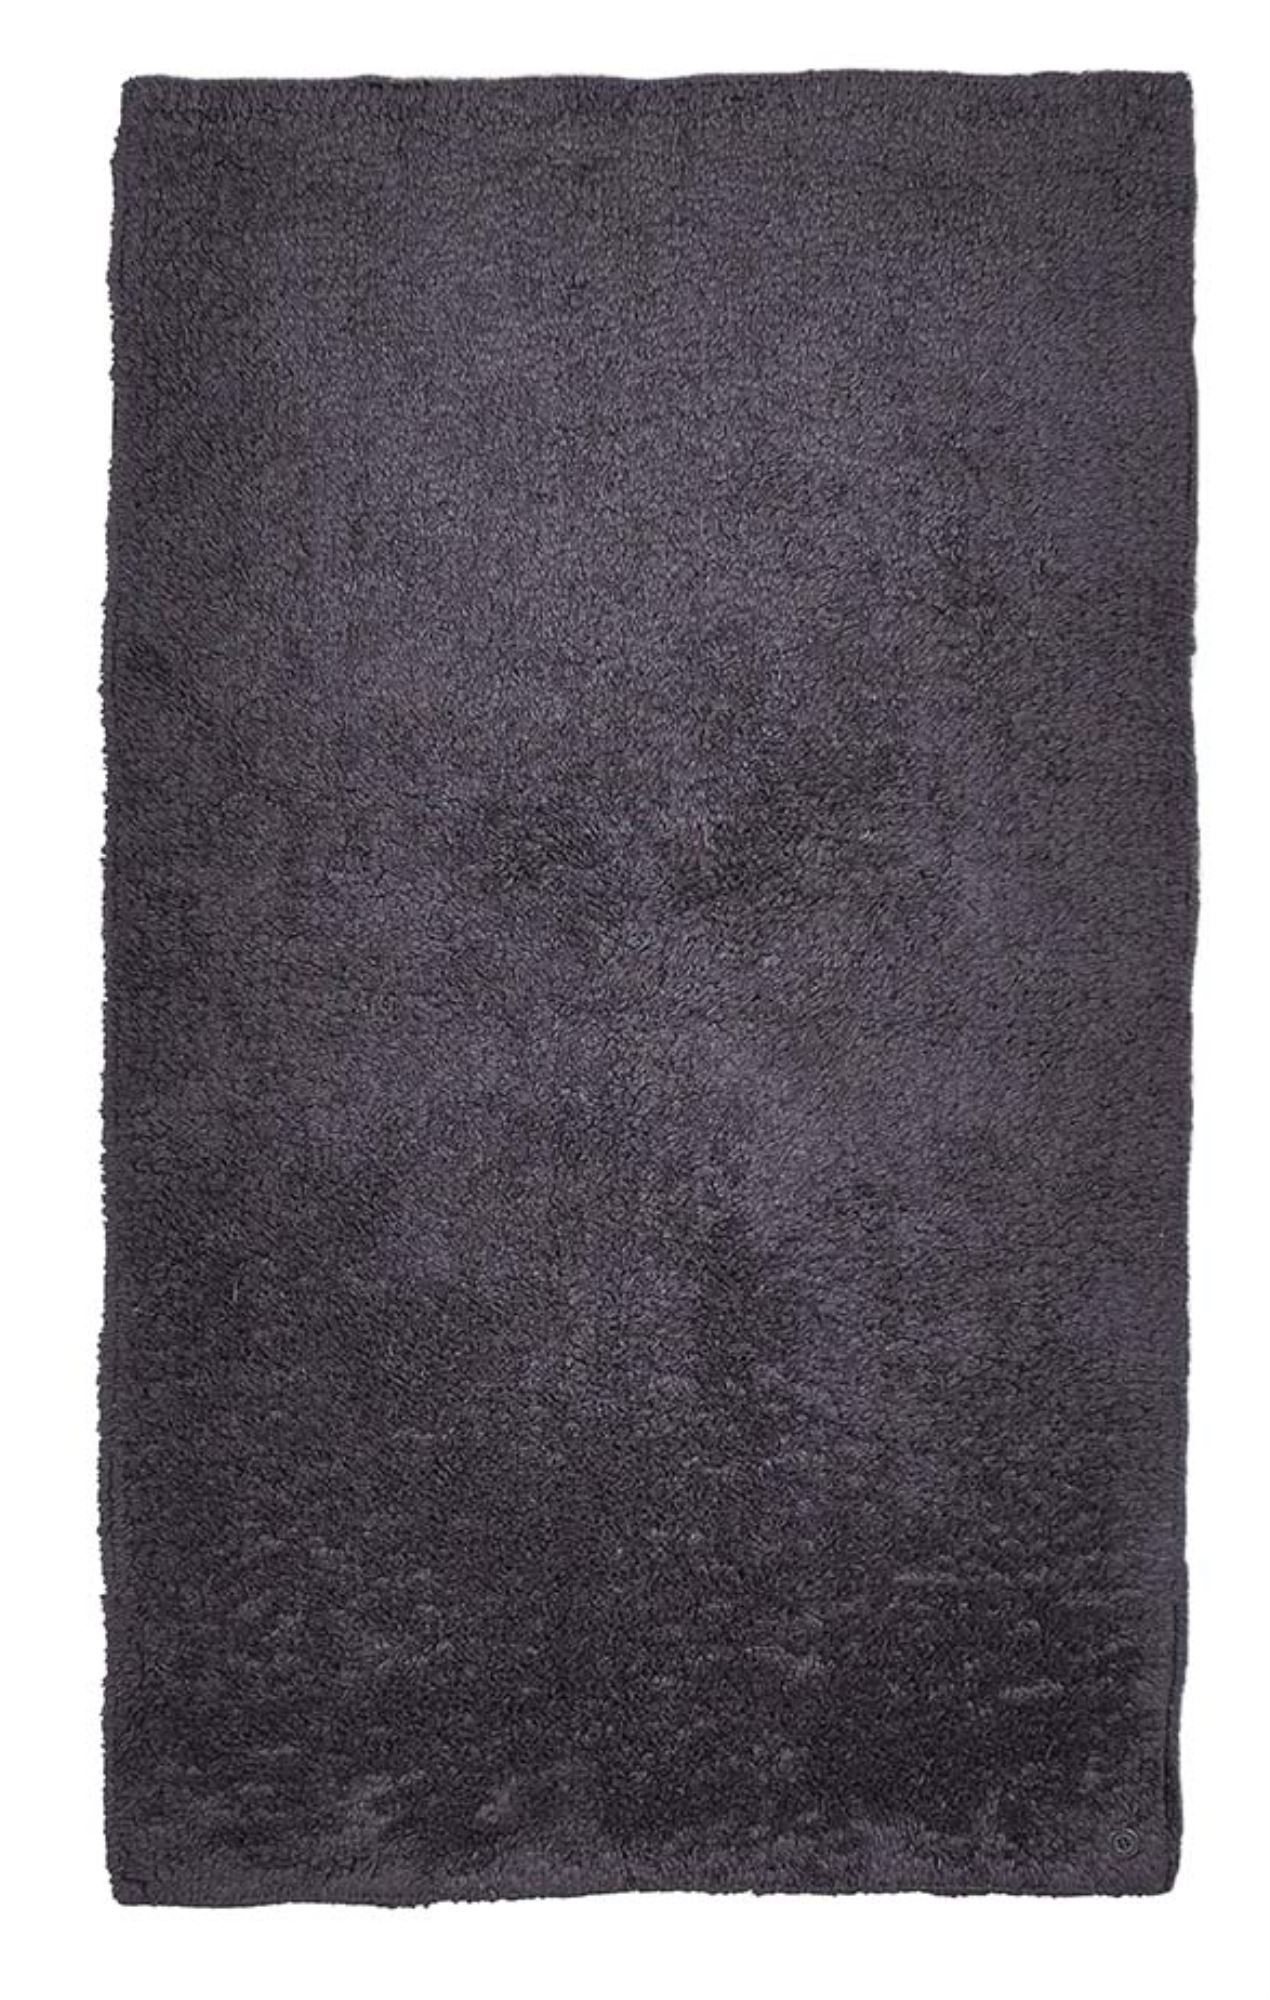 tapis de bain en coton tufté à la main - anthracite 60x100 cm